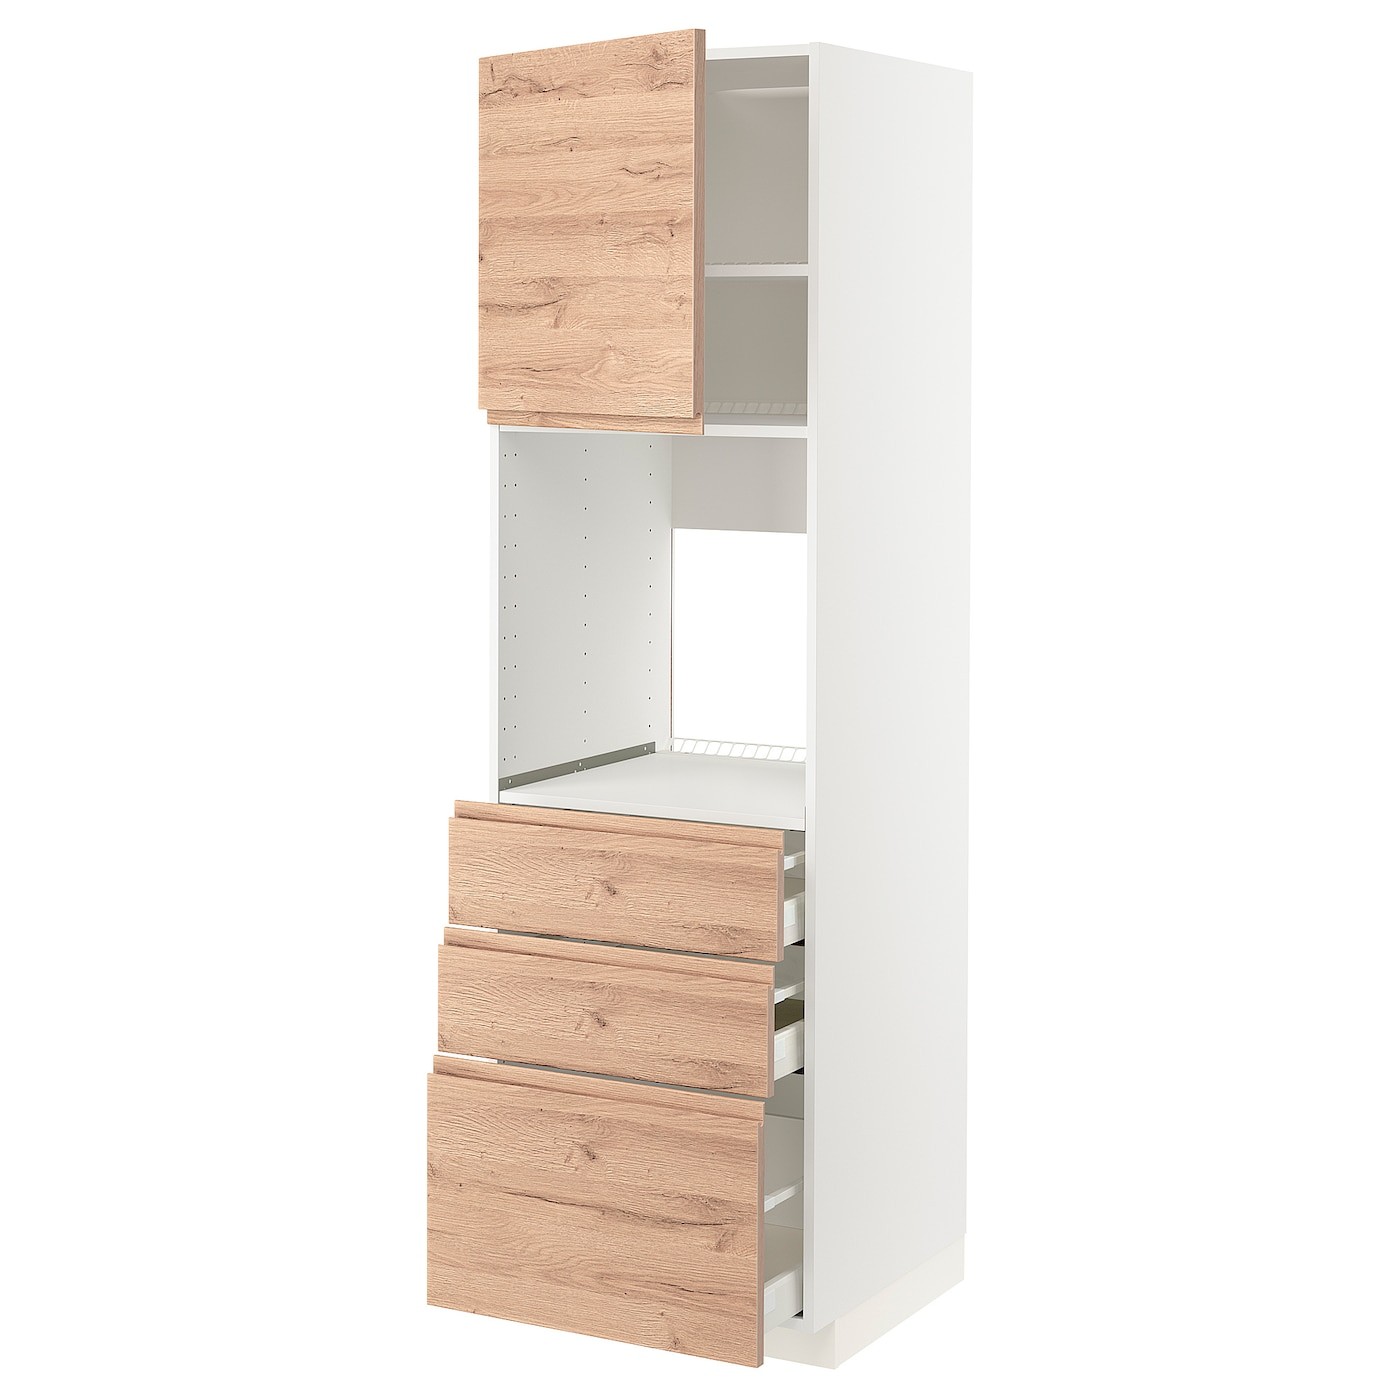 IKEA METOD МЕТОД / MAXIMERA МАКСИМЕРА Высокий шкаф для духовки, белый / Voxtorp имитация дуб, 60x60x200 см 09457014 | 094.570.14